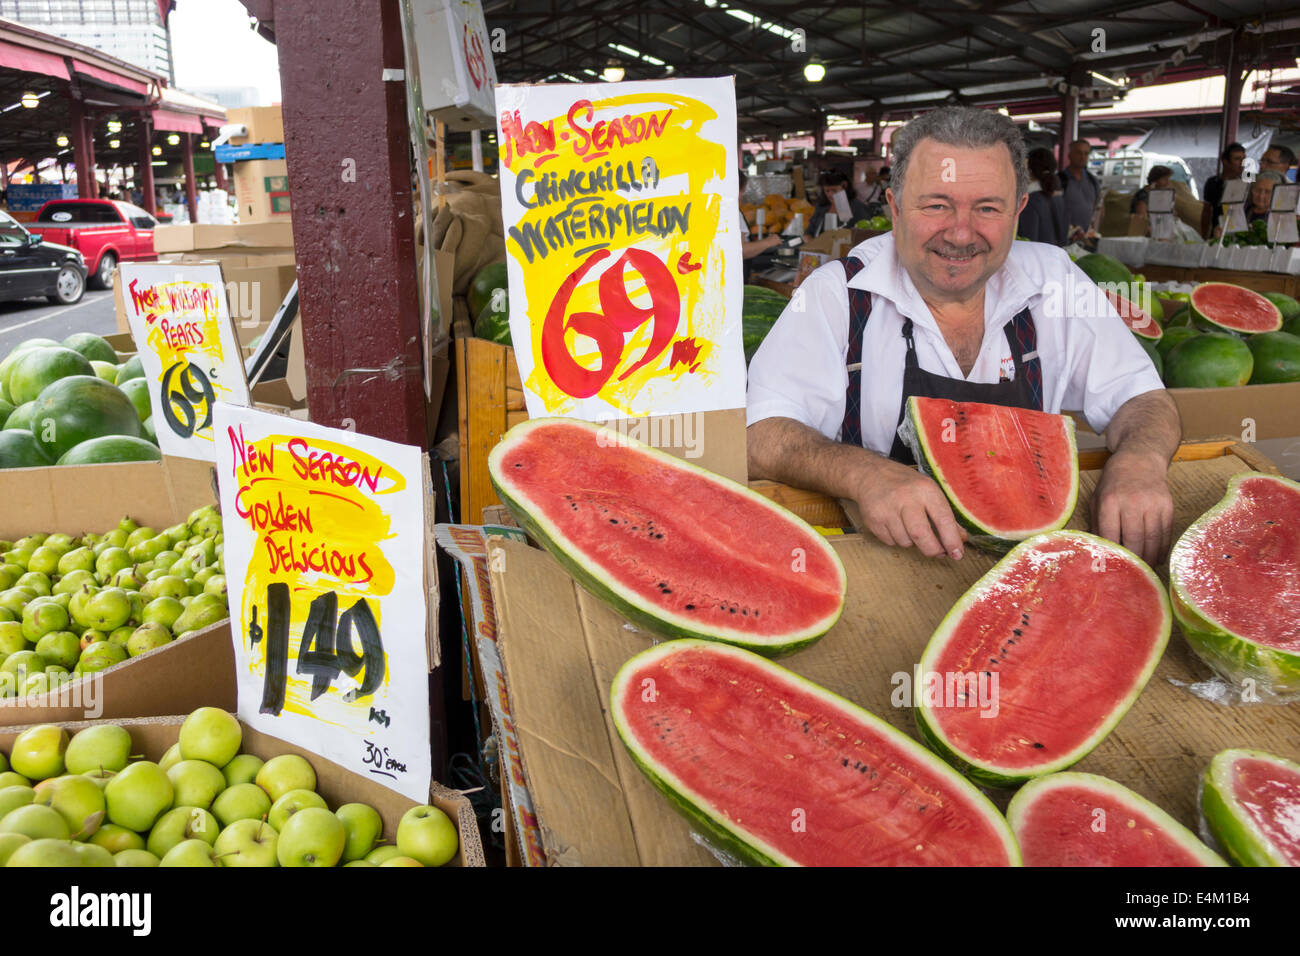 Melbourne Australien, Queen Victoria Market, Verkäufer Stand Stand Markt Markt, Verkauf Display produzieren Wassermelonen Äpfel Mann männlich Zeichen Preise Stockfoto